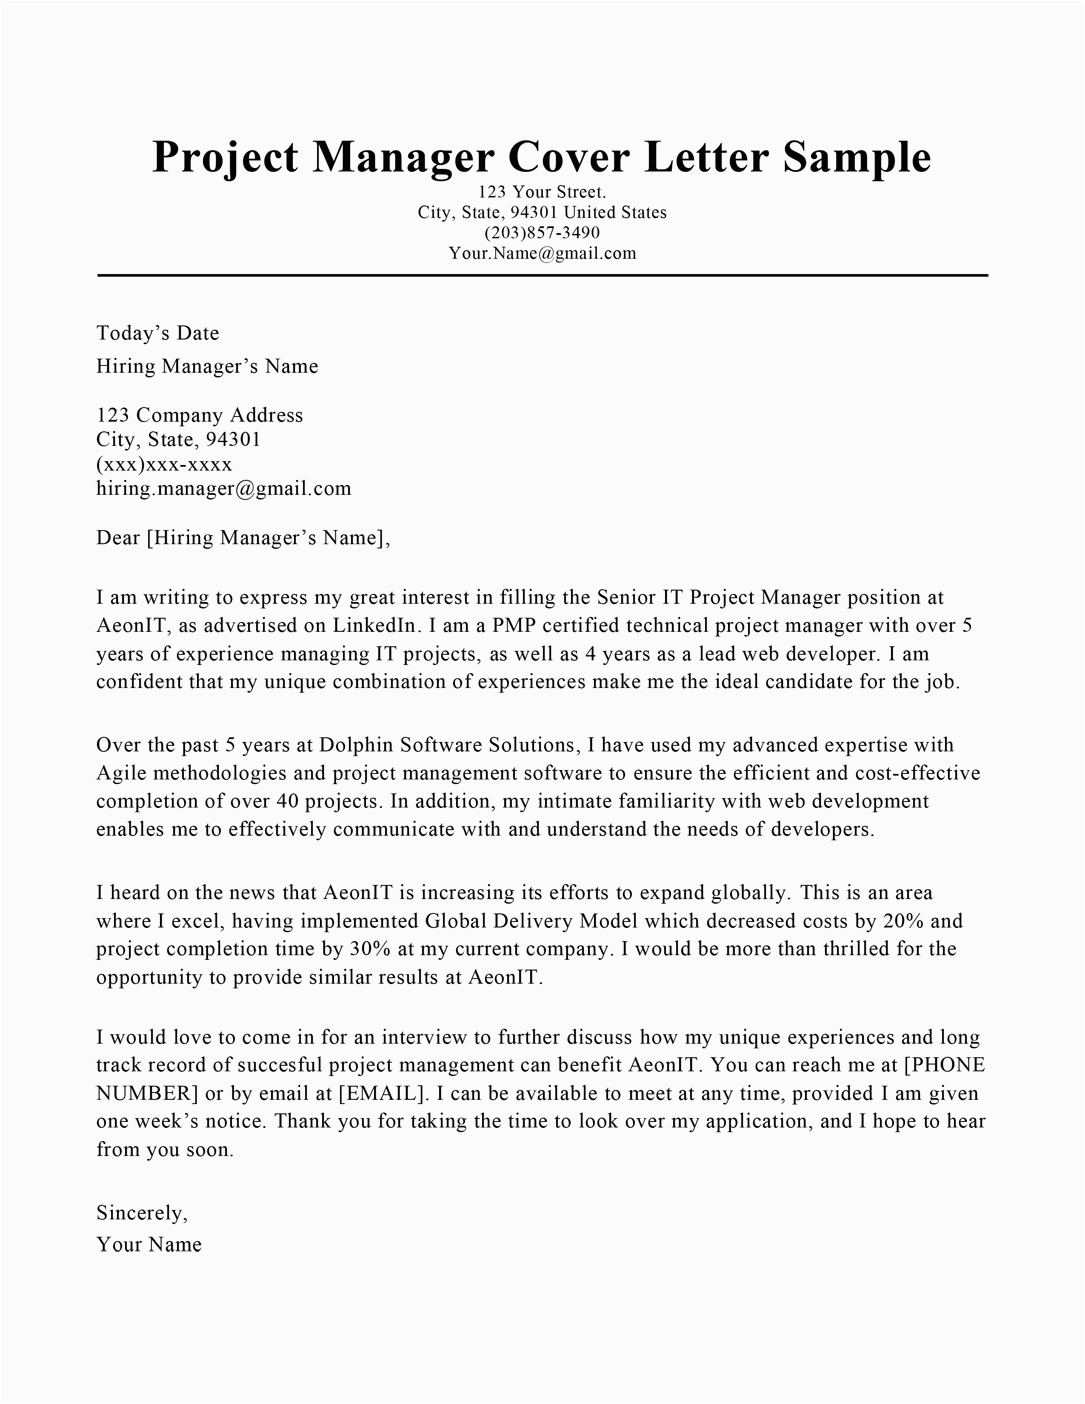 Program Manager Resume Cover Letter Samples Project Manager Cover Letter Sample & Tips